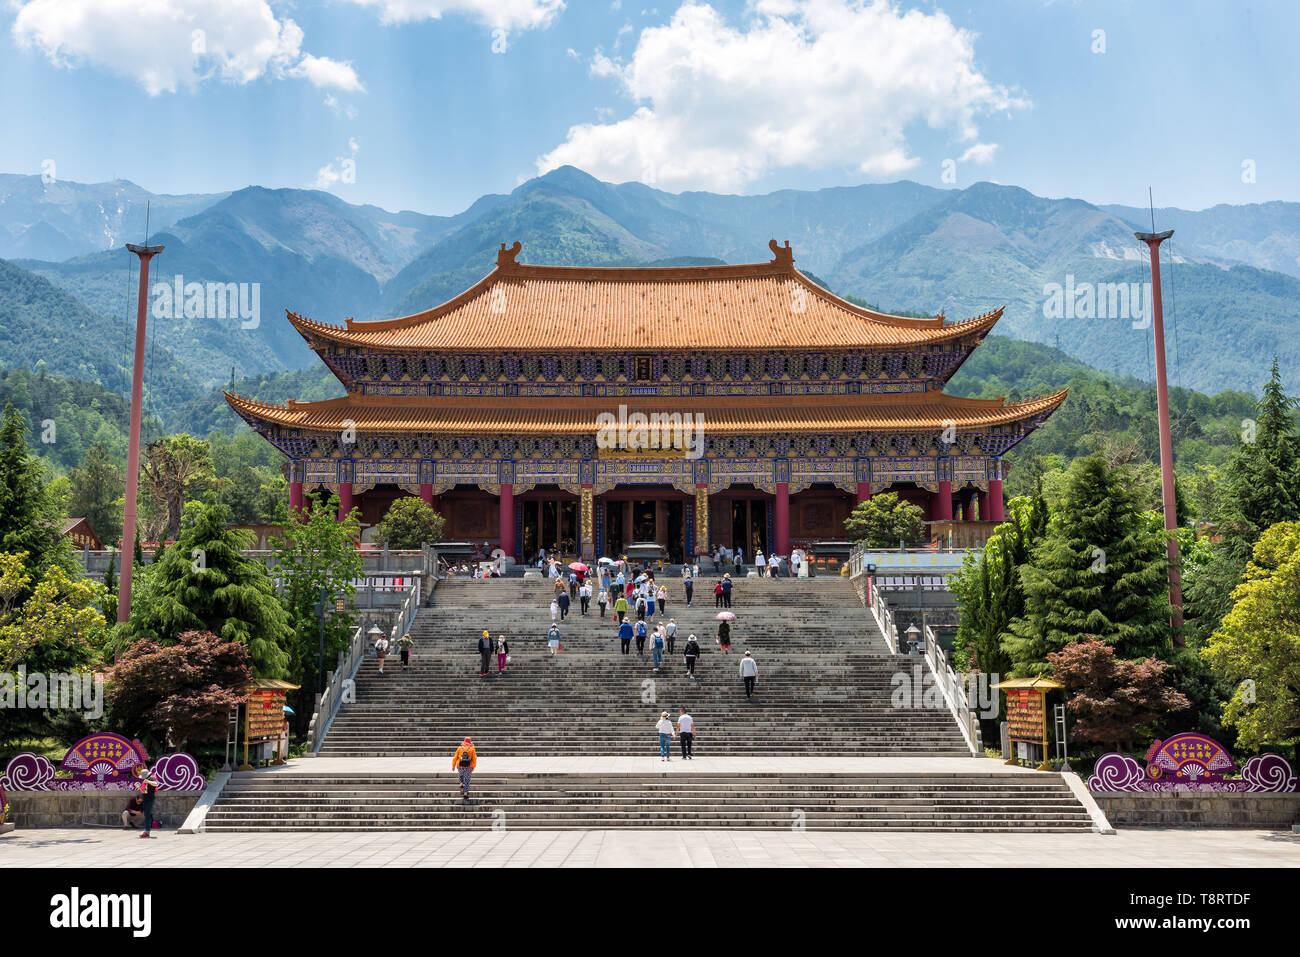 Dali, Chine - 25 Avril 2019 : Le Mahavira Hall de Chong Sheng monastère. Ce monastère bouddhiste a été une fois que le temple royal du royaume de Dali Banque D'Images